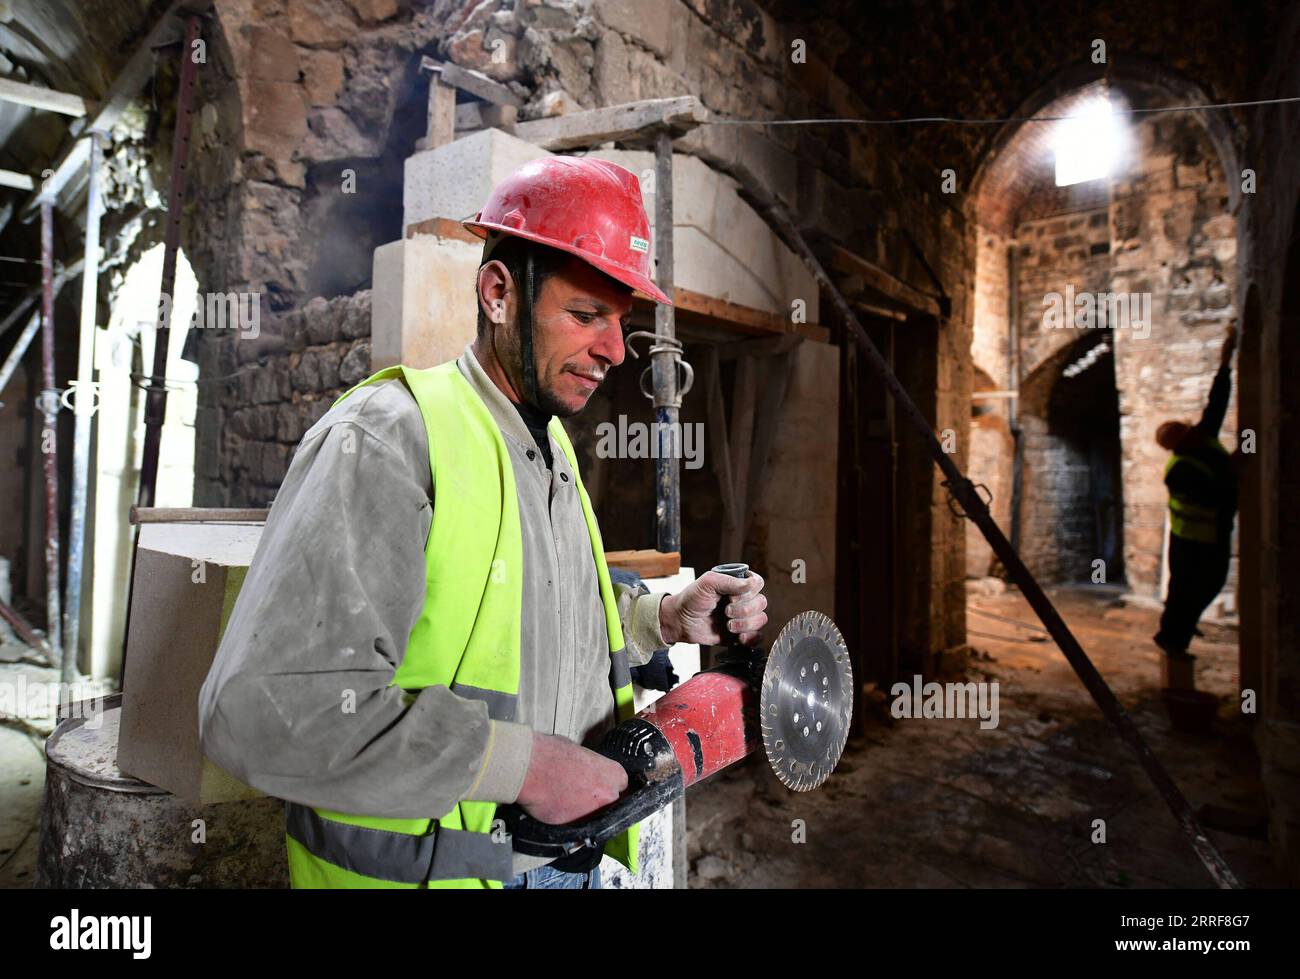 220404 -- ALEPPO SYRIEN, 4. April 2022 -- Arbeiter führen Restaurierungsarbeiten im al-Madina Souq, dem größten überdachten historischen Markt der Welt, in Aleppo, Syrien, am 6. März 2022 durch. Inmitten der Ruinen in der Altstadt von Aleppo bauen und reparieren energiegeladene Bauarbeiter den berühmten ummauerten alten Marktplatz, in der Hoffnung, das Geschäftsleben in der Gegend wieder in seinen früheren Glanz zu bringen. Foto von /Xinhua TO GO WITH Roundup: Syriens kriegsgeschüttelter ANTIKER MARKTPLATZ im Wiederaufbau SYRIEN-ALEPPO-ANTIKER MARKTPLATZ-WIEDERAUFBAU AmmarxSafarjalani PUBLICATIONxNOTxINxCHN Stockfoto